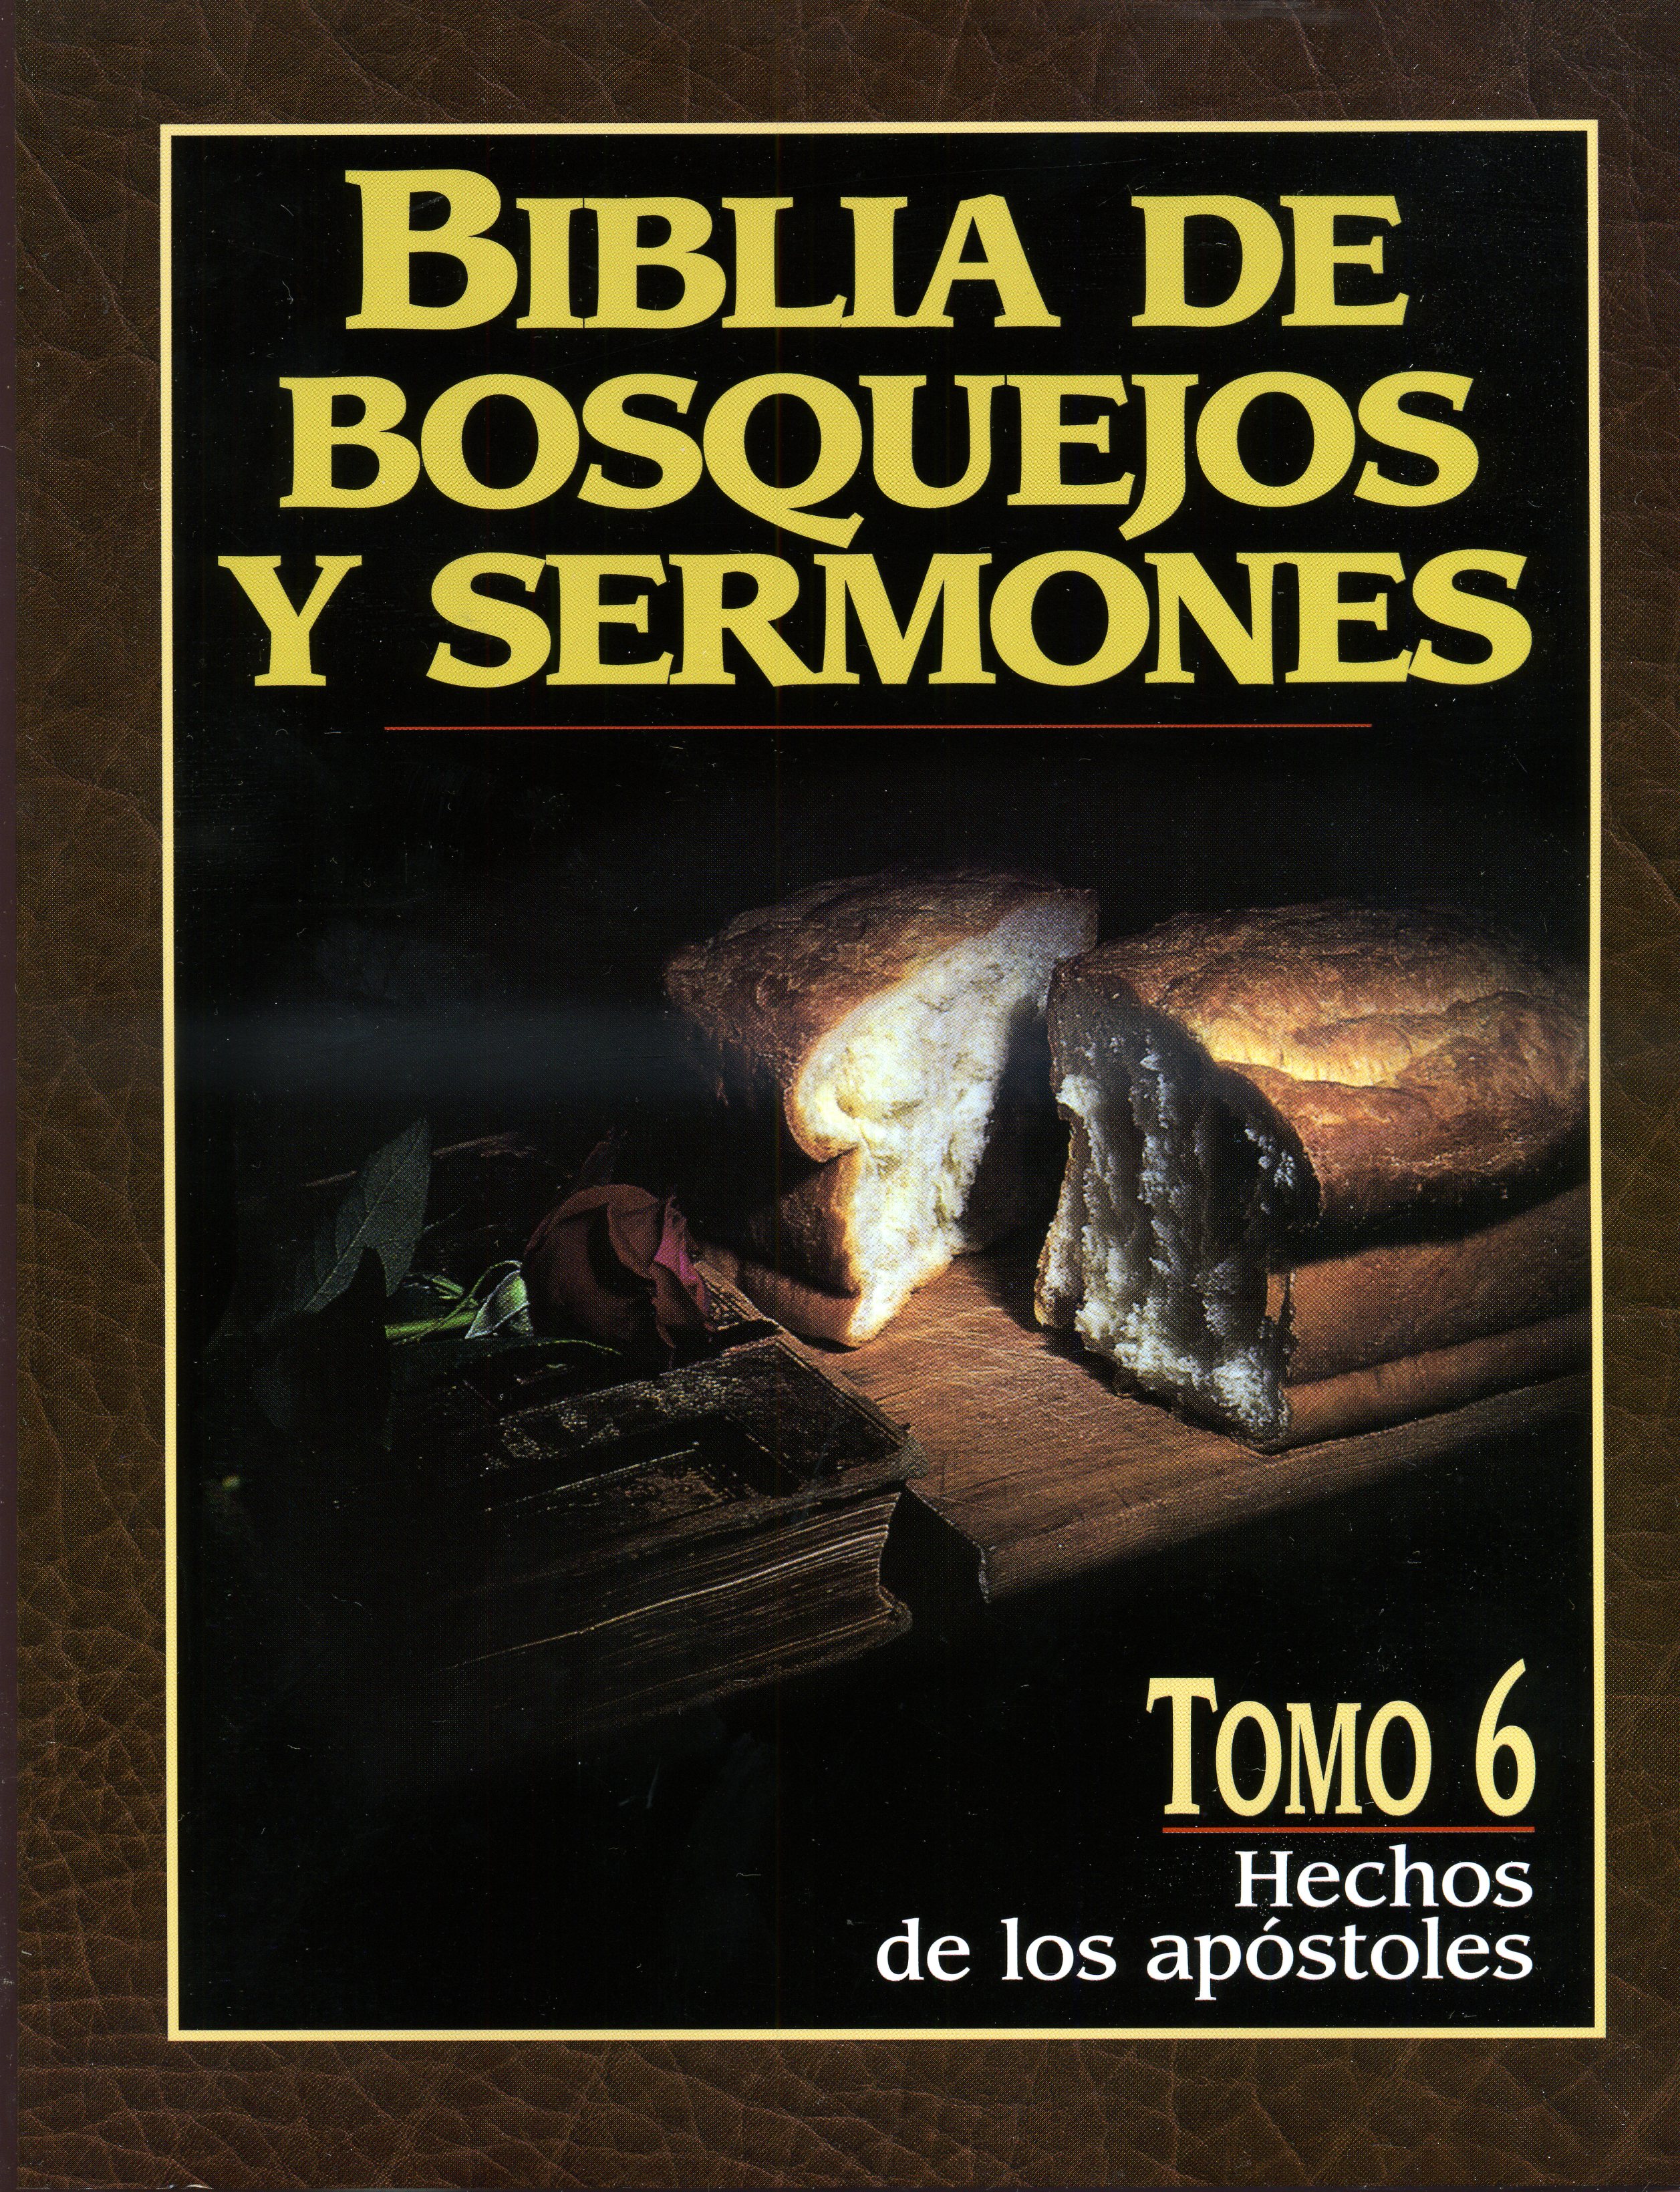 Biblia de Bosquejos y Sermones - Hechos de los apóstoles